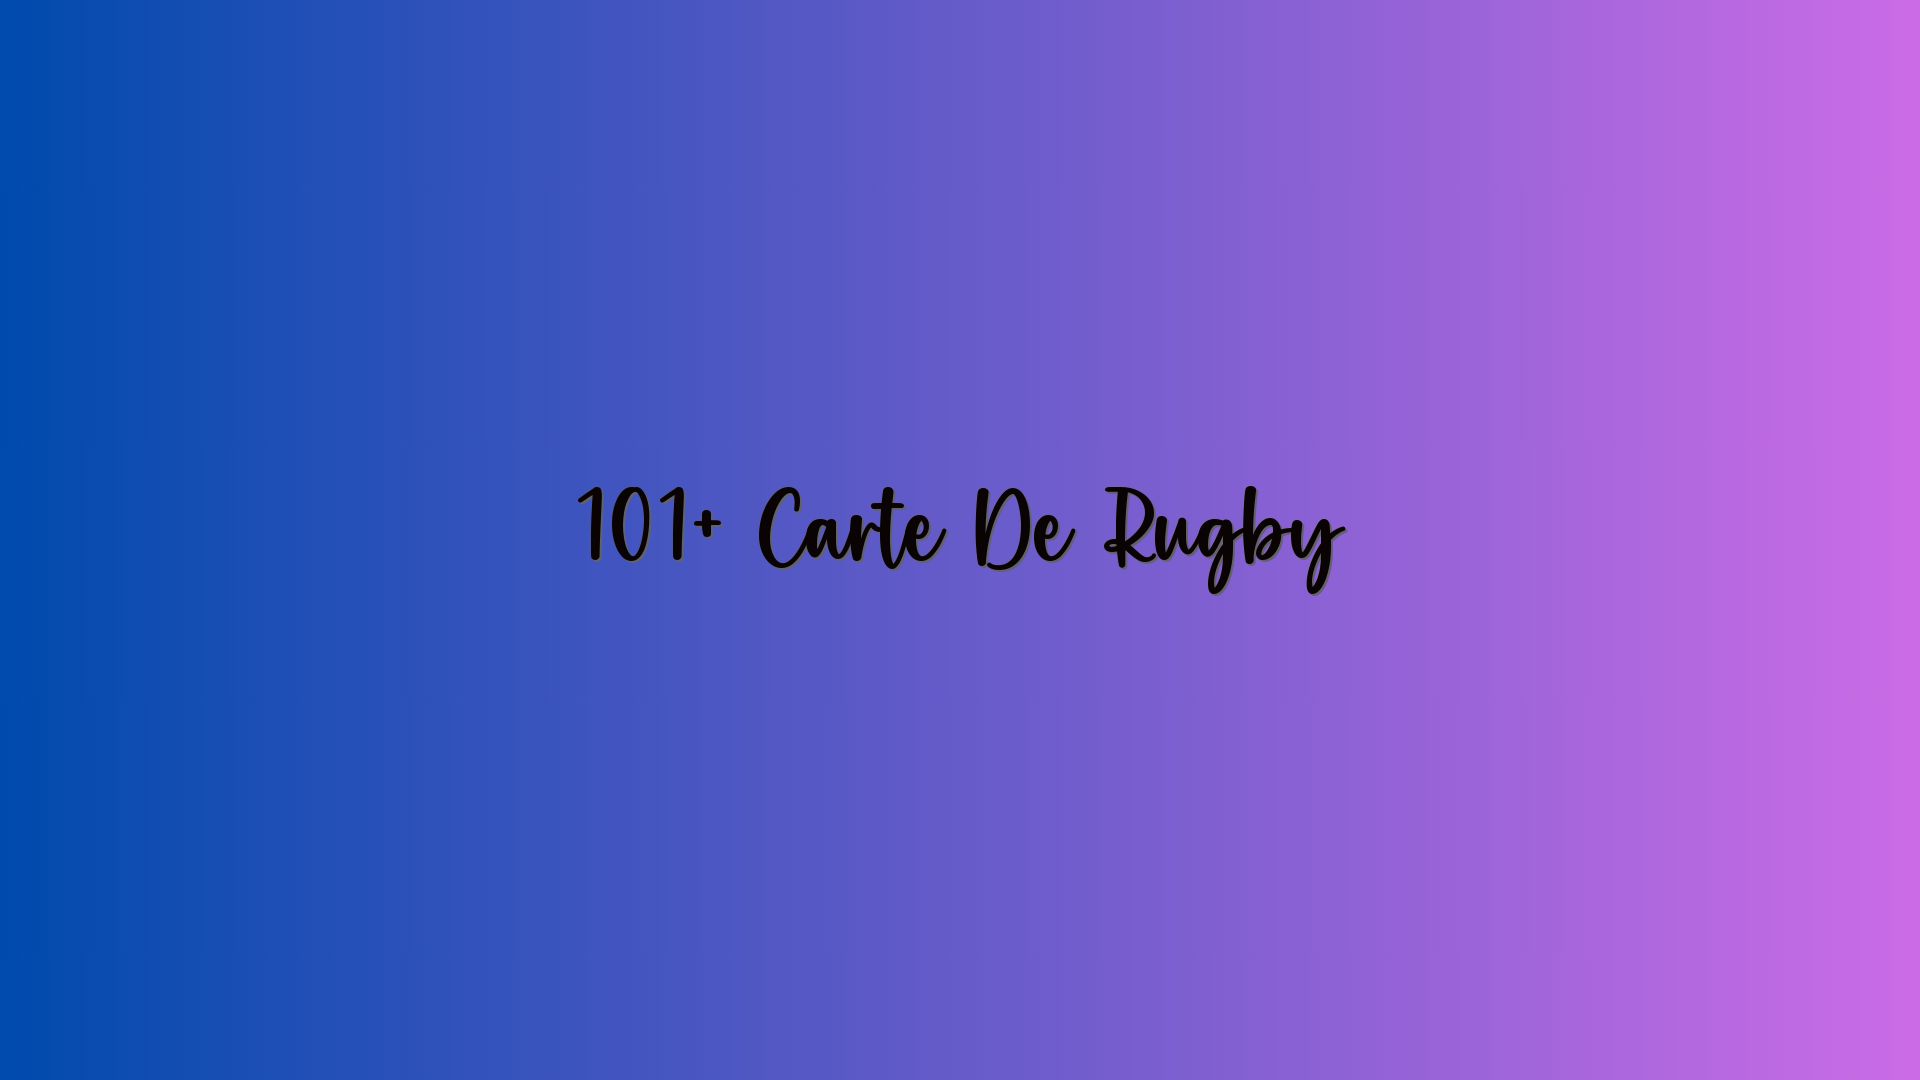 101+ Carte De Rugby